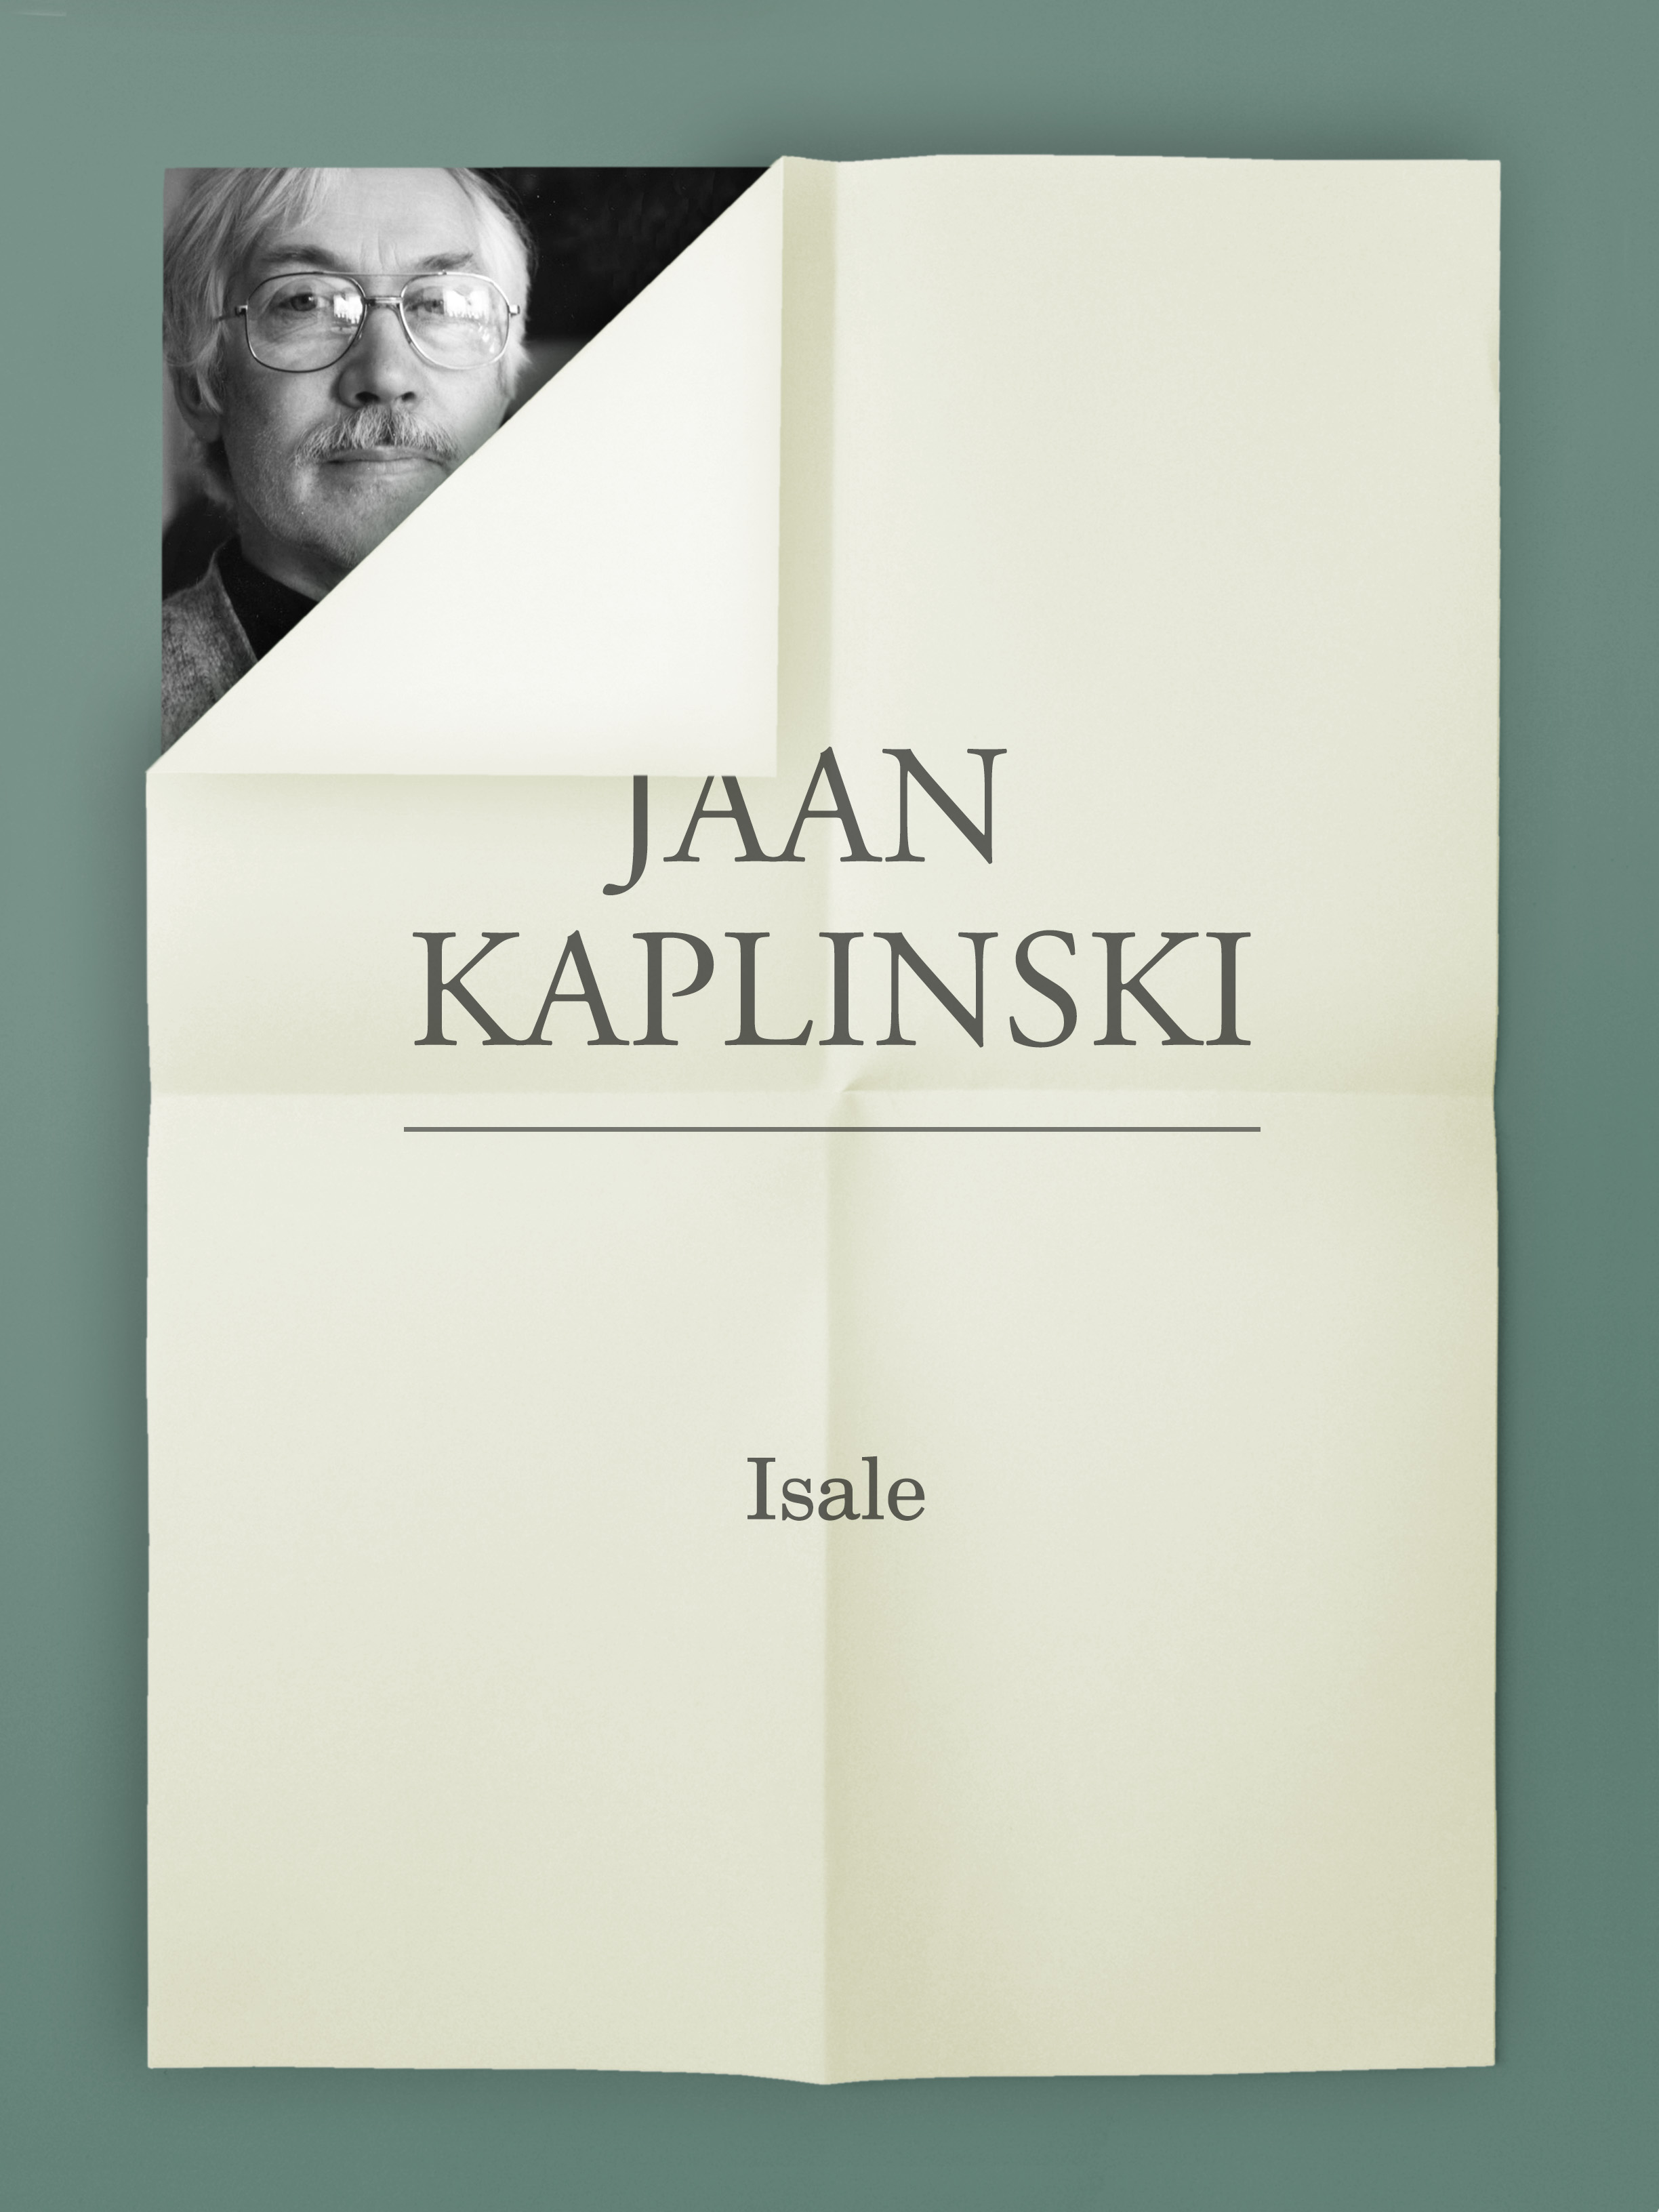 Книга Isale из серии , созданная Jaan Kaplinski, может относится к жанру Литература 20 века, Зарубежная классика. Стоимость электронной книги Isale с идентификатором 21184708 составляет 471.56 руб.